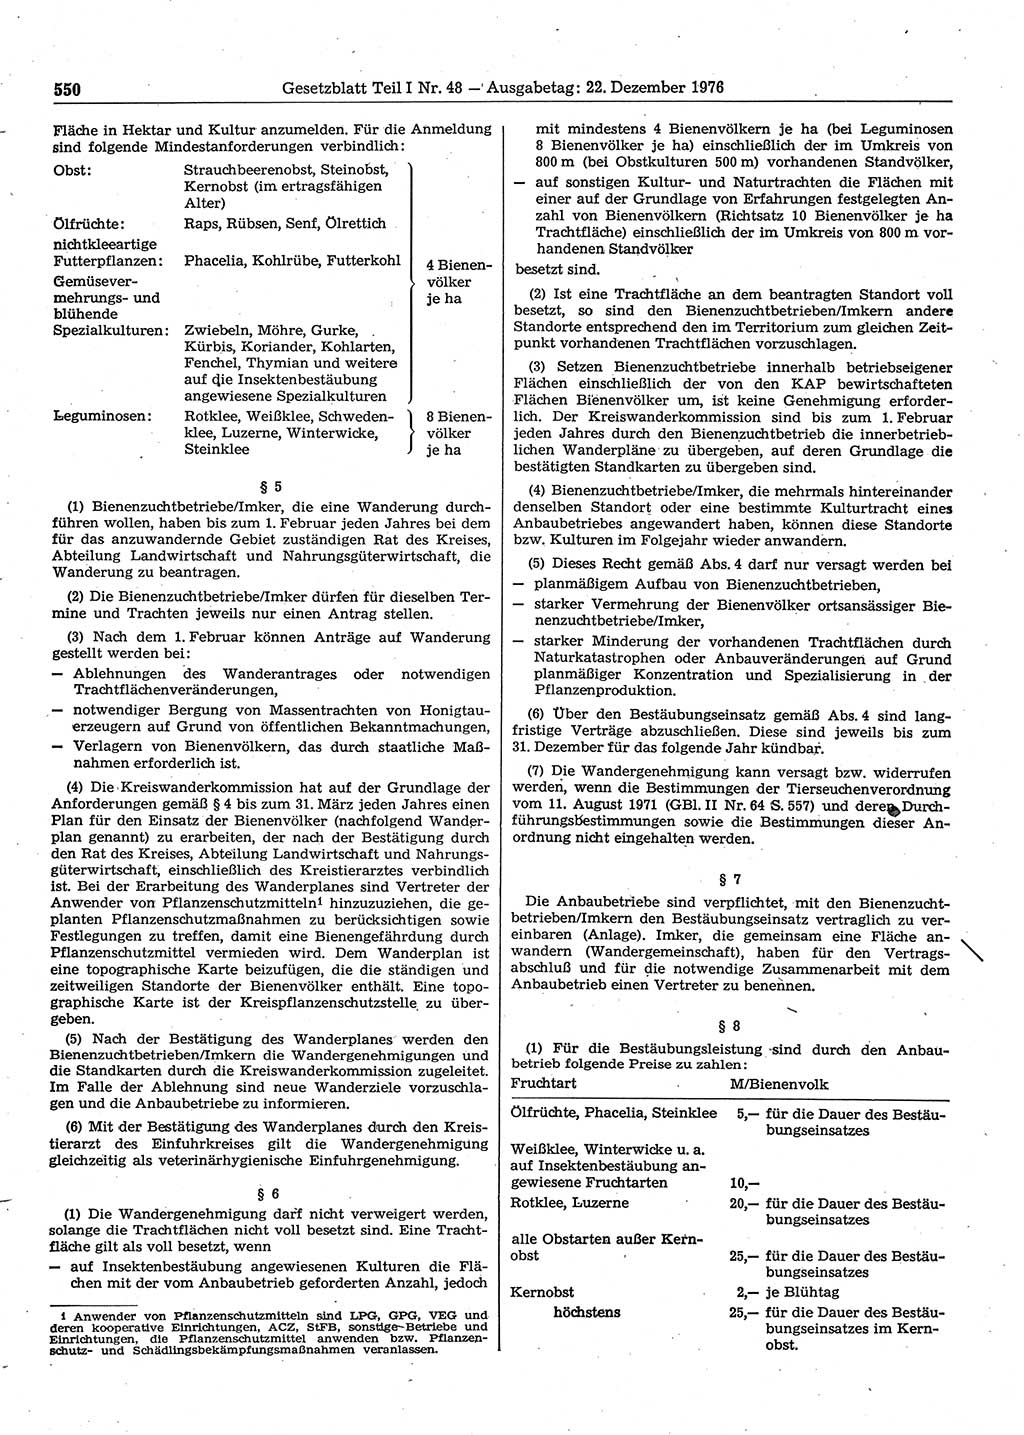 Gesetzblatt (GBl.) der Deutschen Demokratischen Republik (DDR) Teil Ⅰ 1976, Seite 550 (GBl. DDR Ⅰ 1976, S. 550)